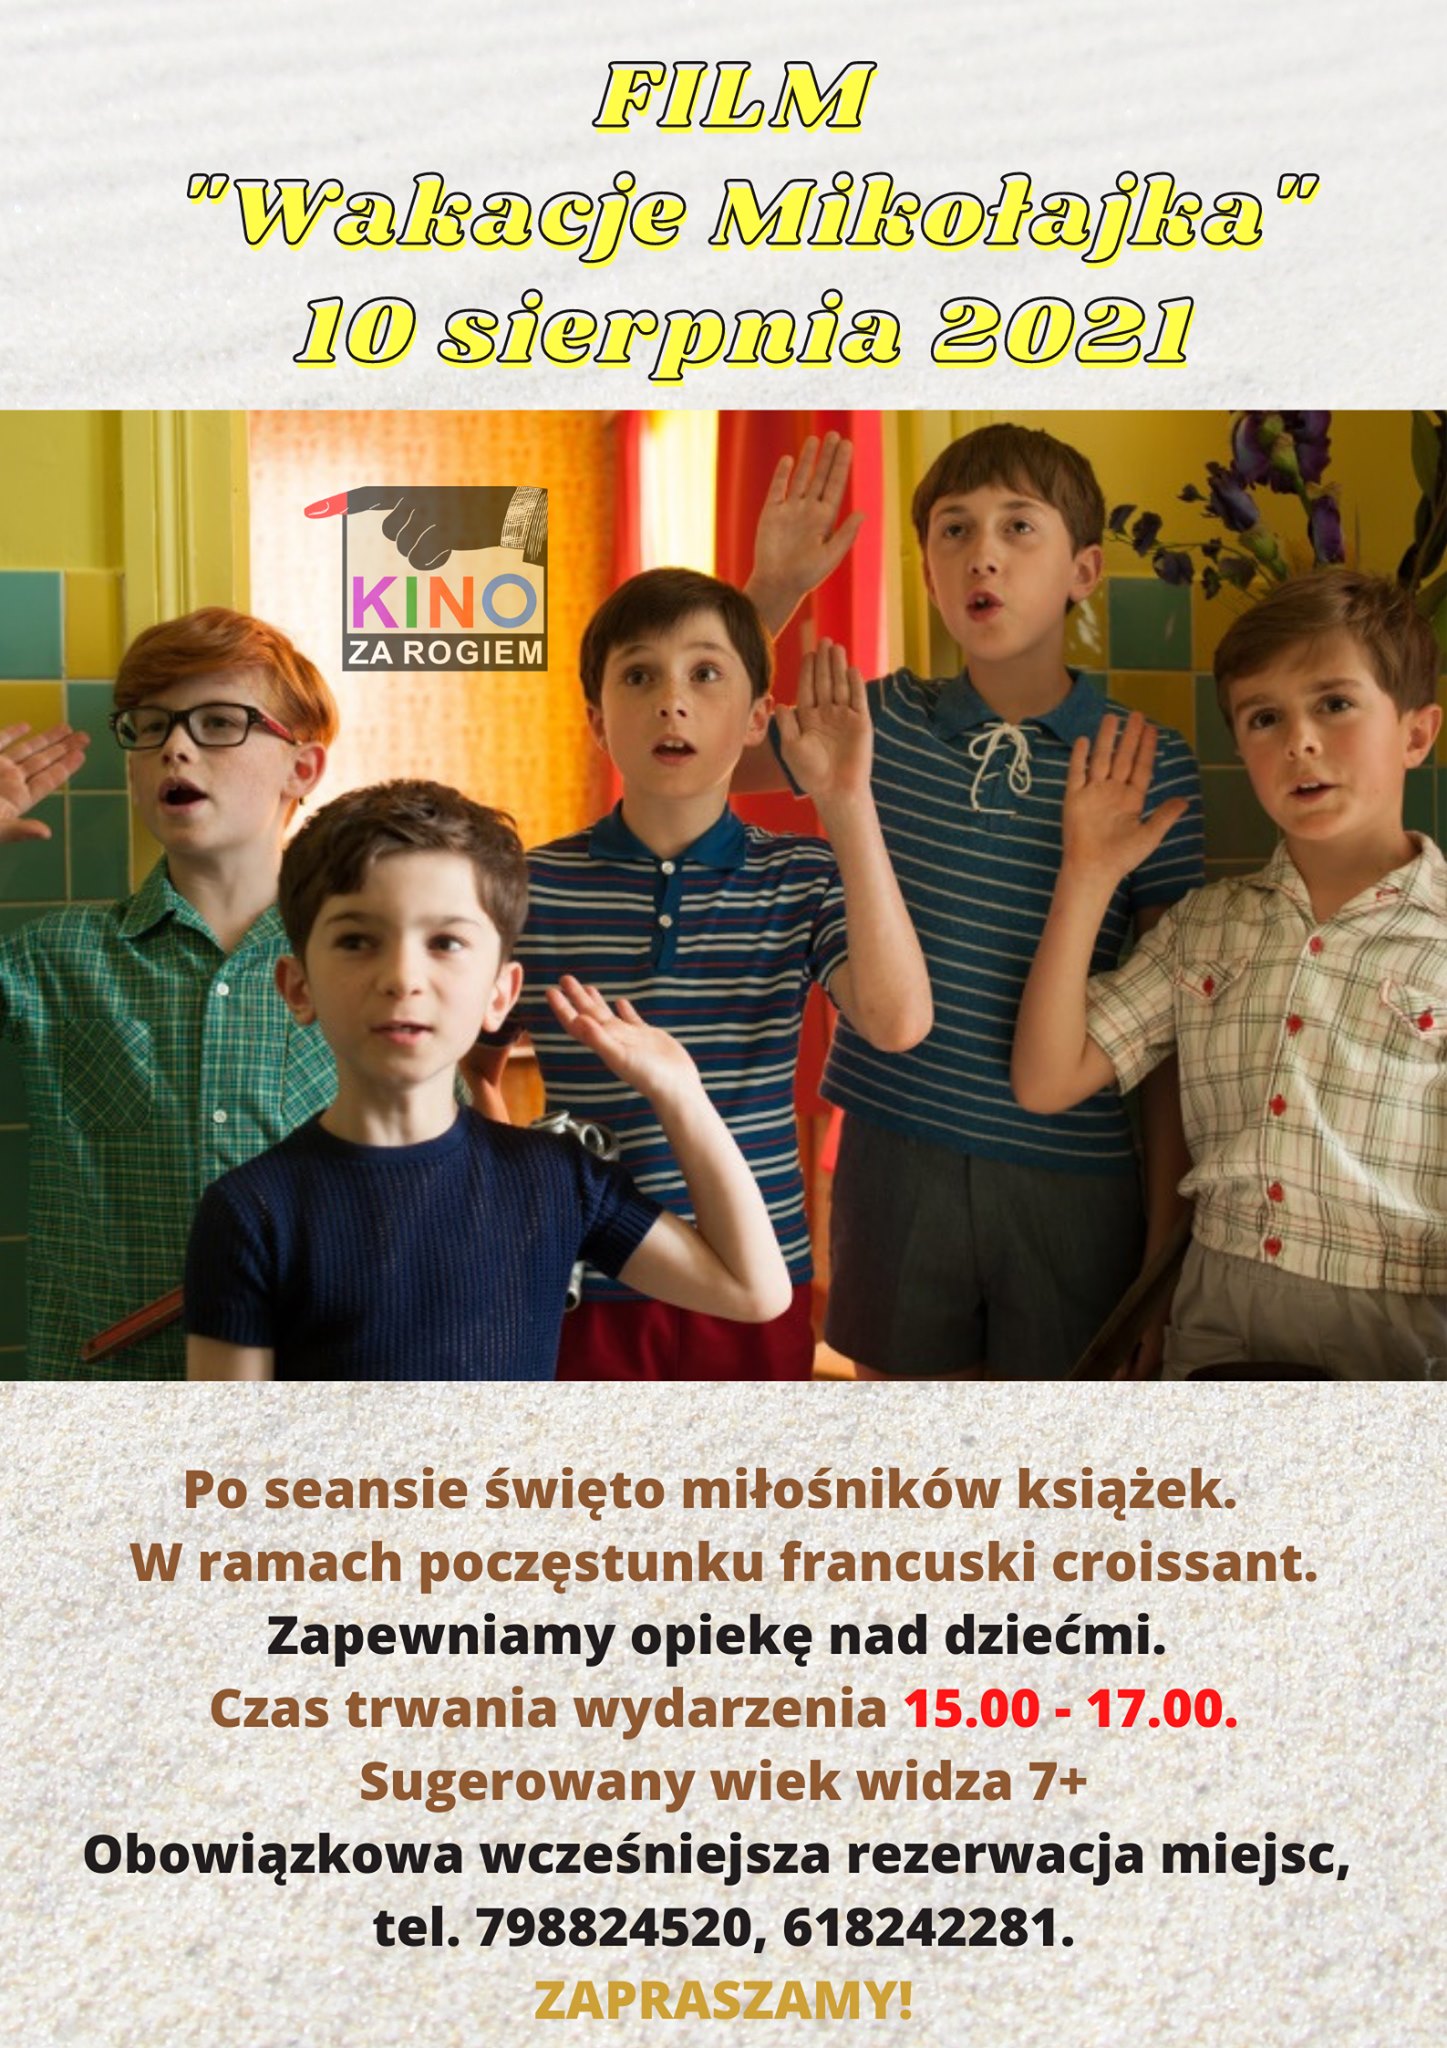 Pięciu chłopców machający rękami. Powyżej tekst: film Wakacje Mikołajka, 10 sierpnia 2021.